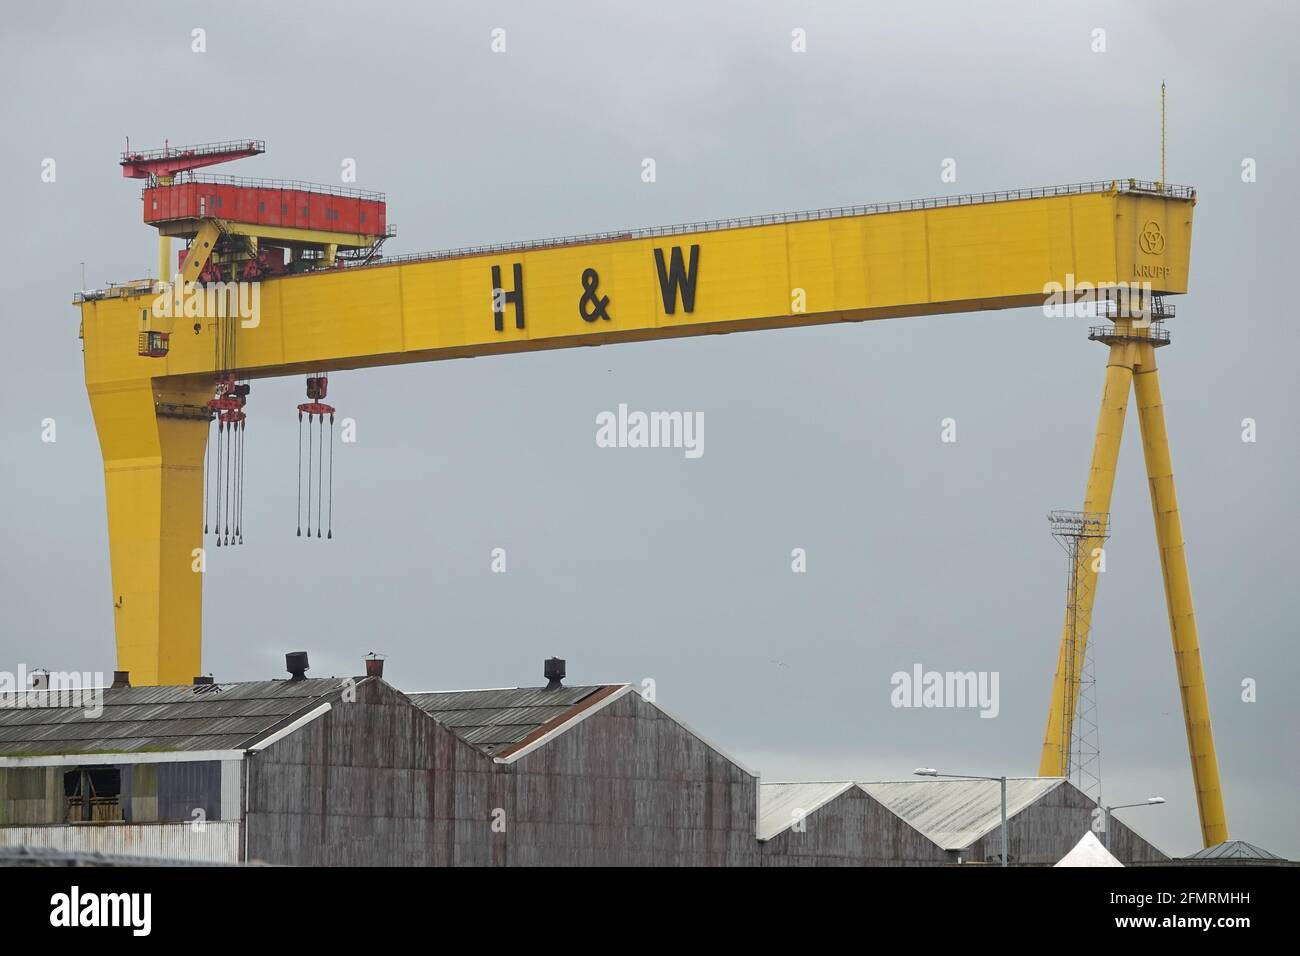 Belfast, Nordirland - 6. Juni 2019: An einem bewölkten Tag wird in der Harland & Wolff Werft ein historischer Schiffskran namens Goliath gezeigt. Stockfoto